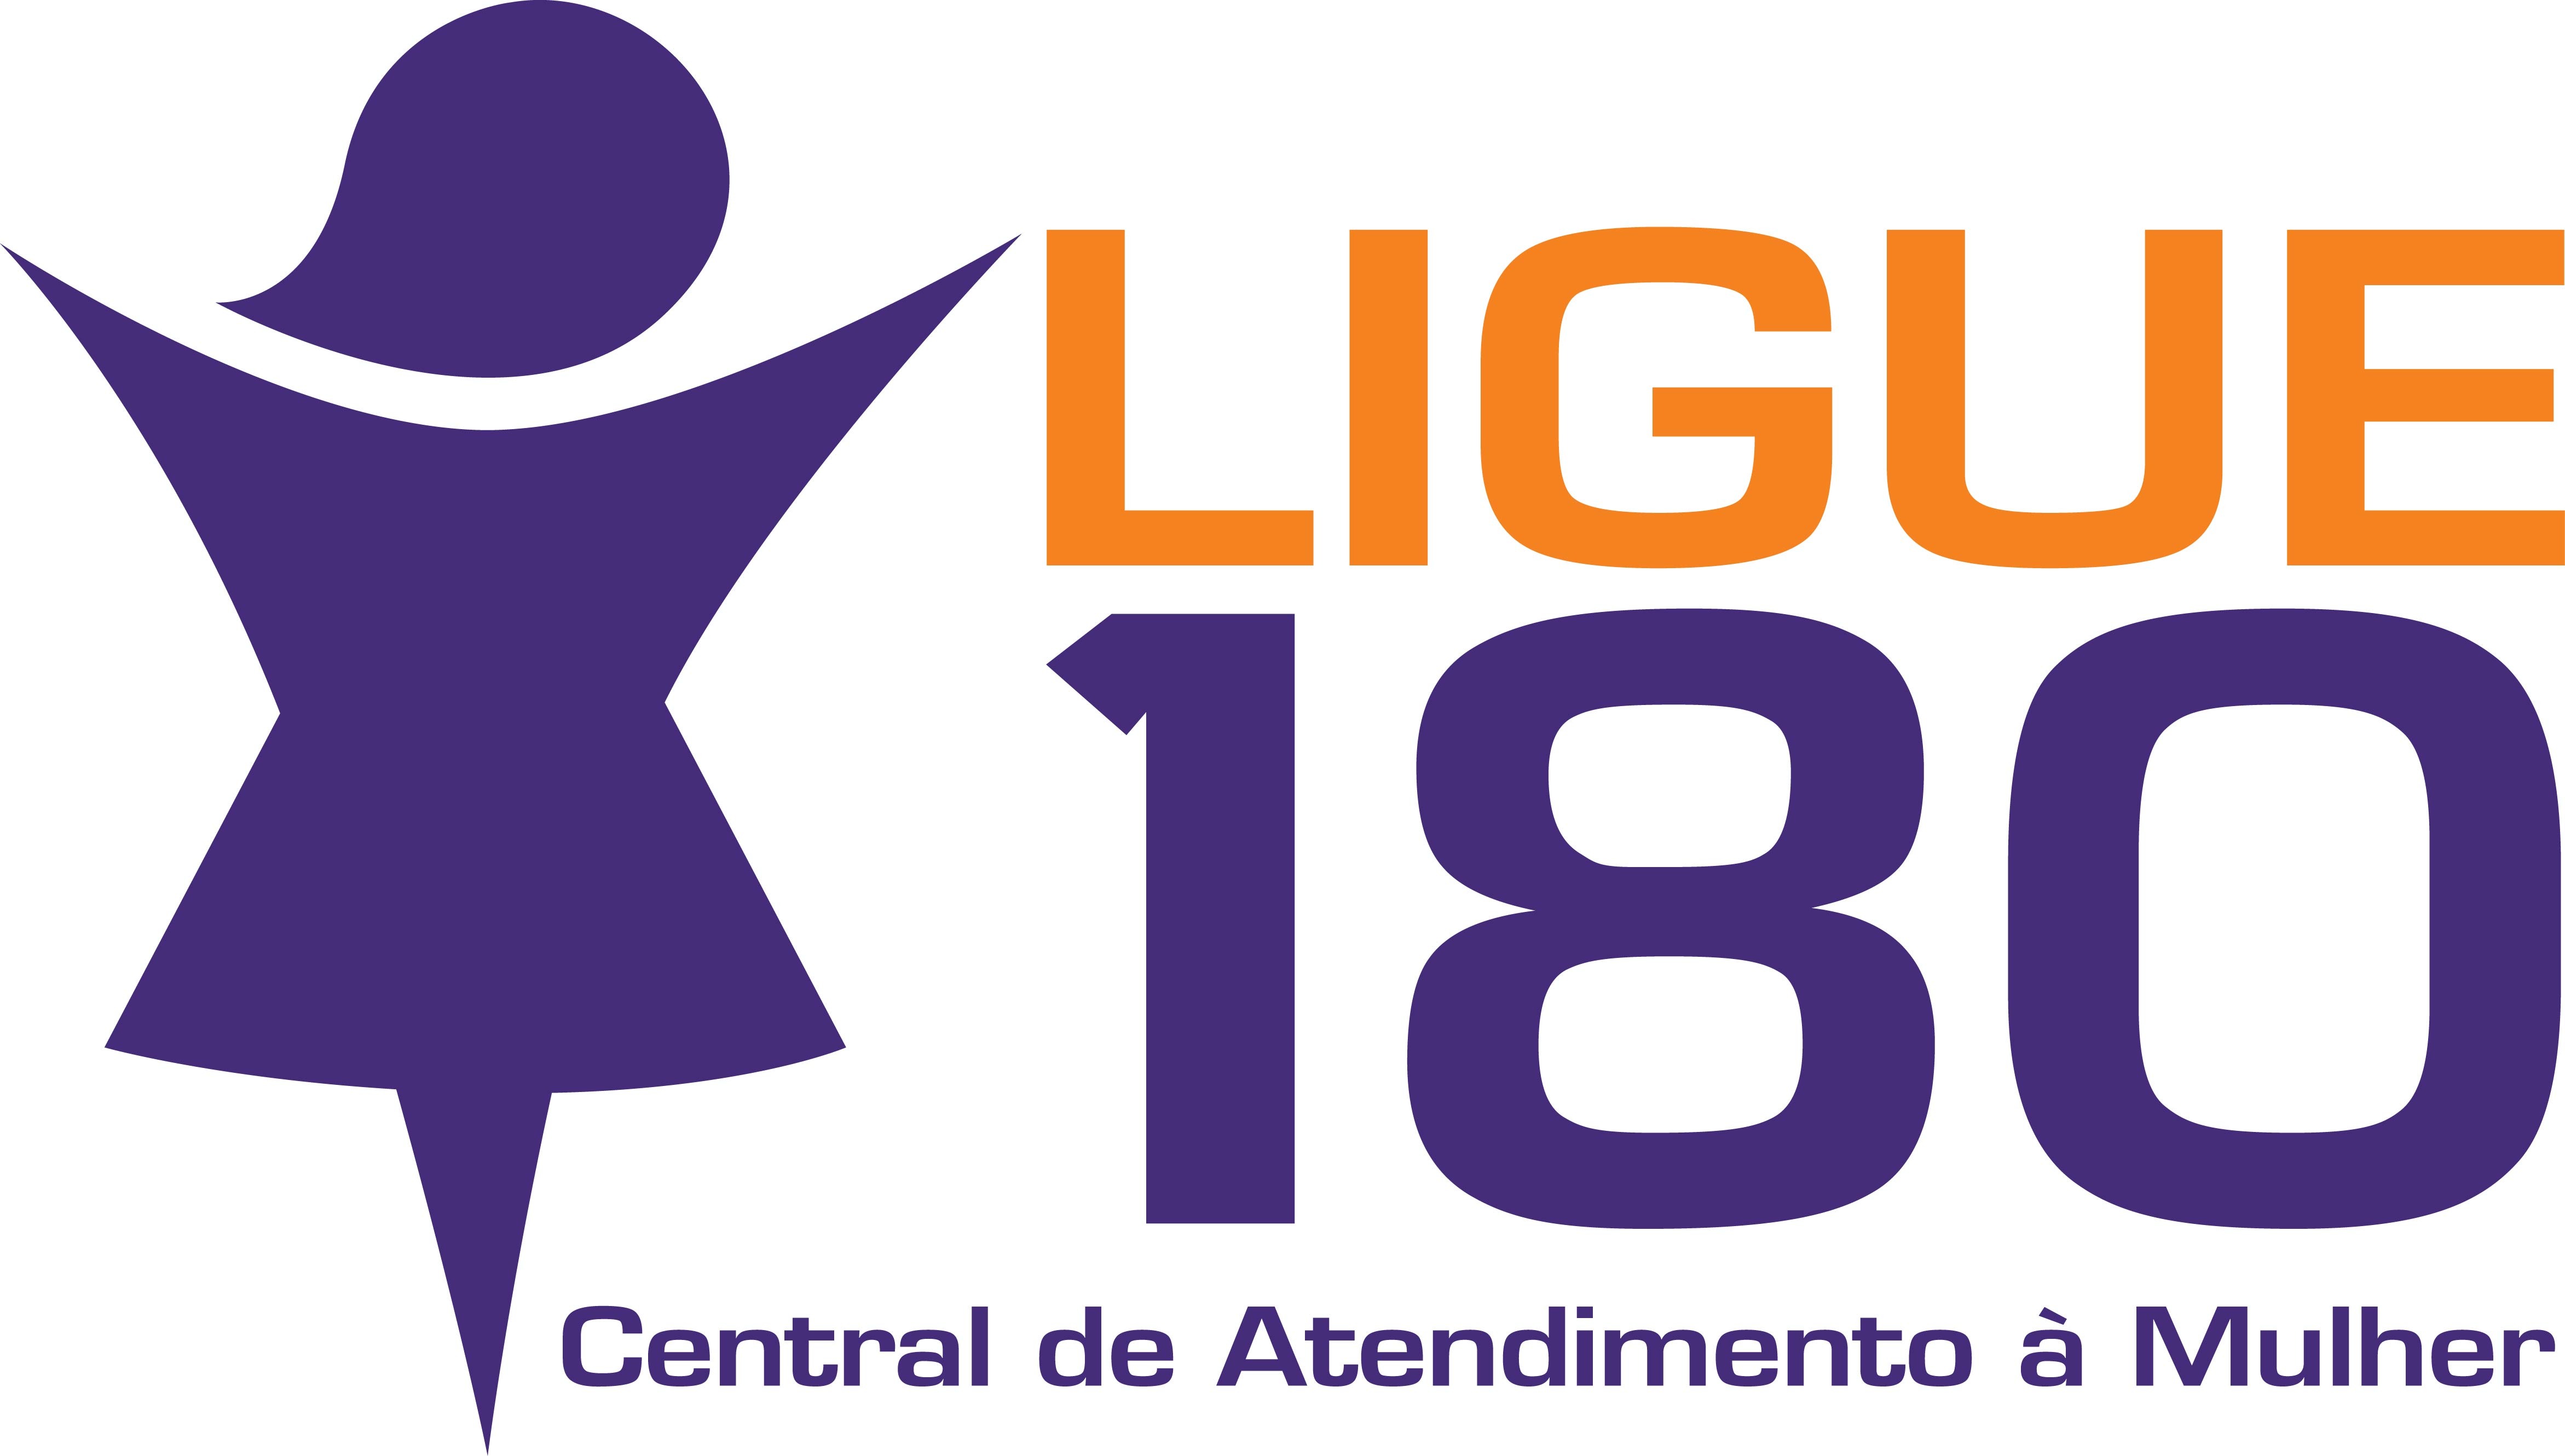 Ligue 180: Câmara aprova obrigatoriedade na divulgação da Central de Atendimento à Mulher 